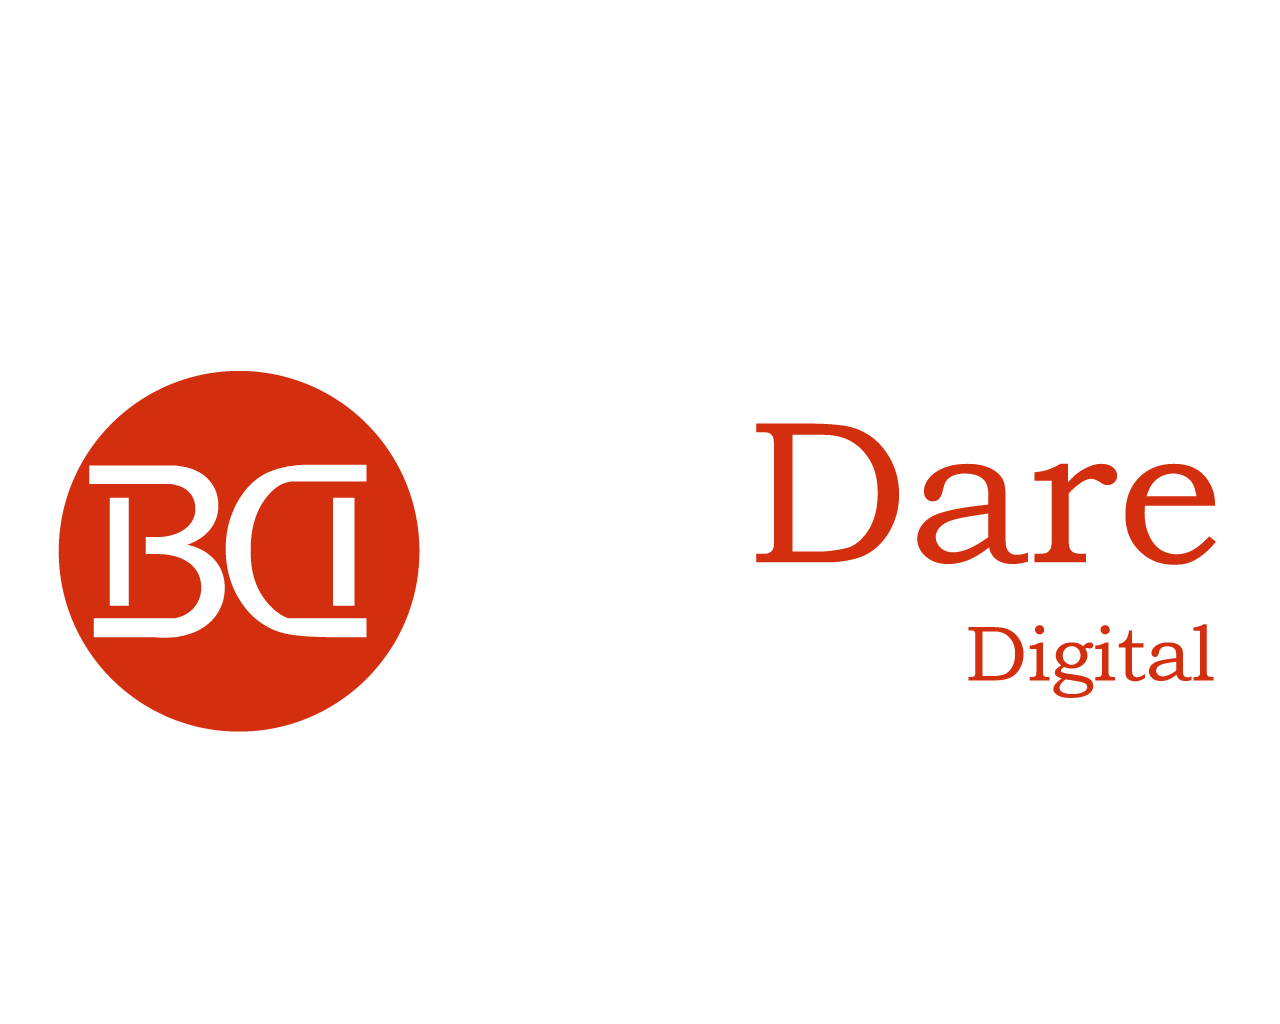 Be Dare Consultoria Digital